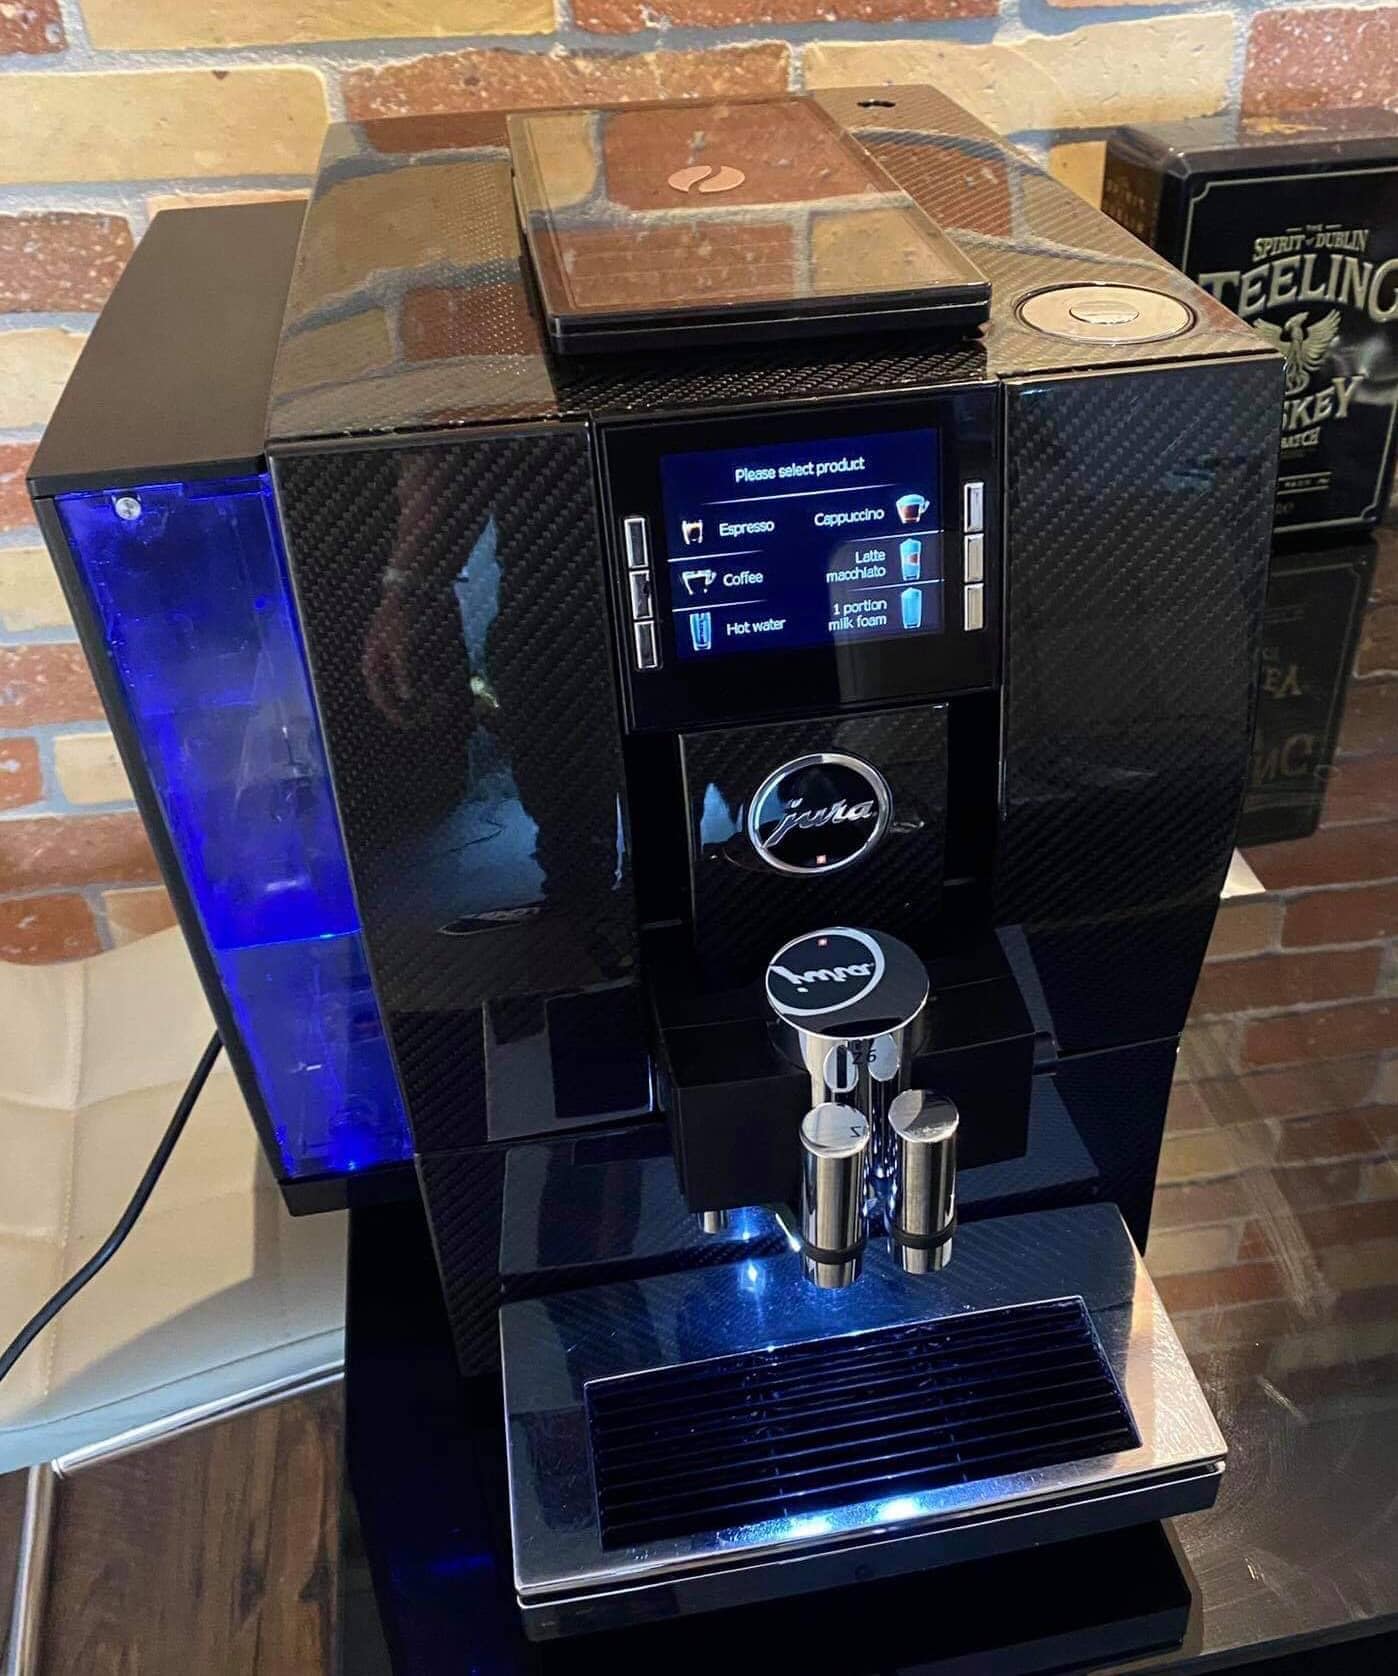 Jura Z6 can brew pre-ground coffees